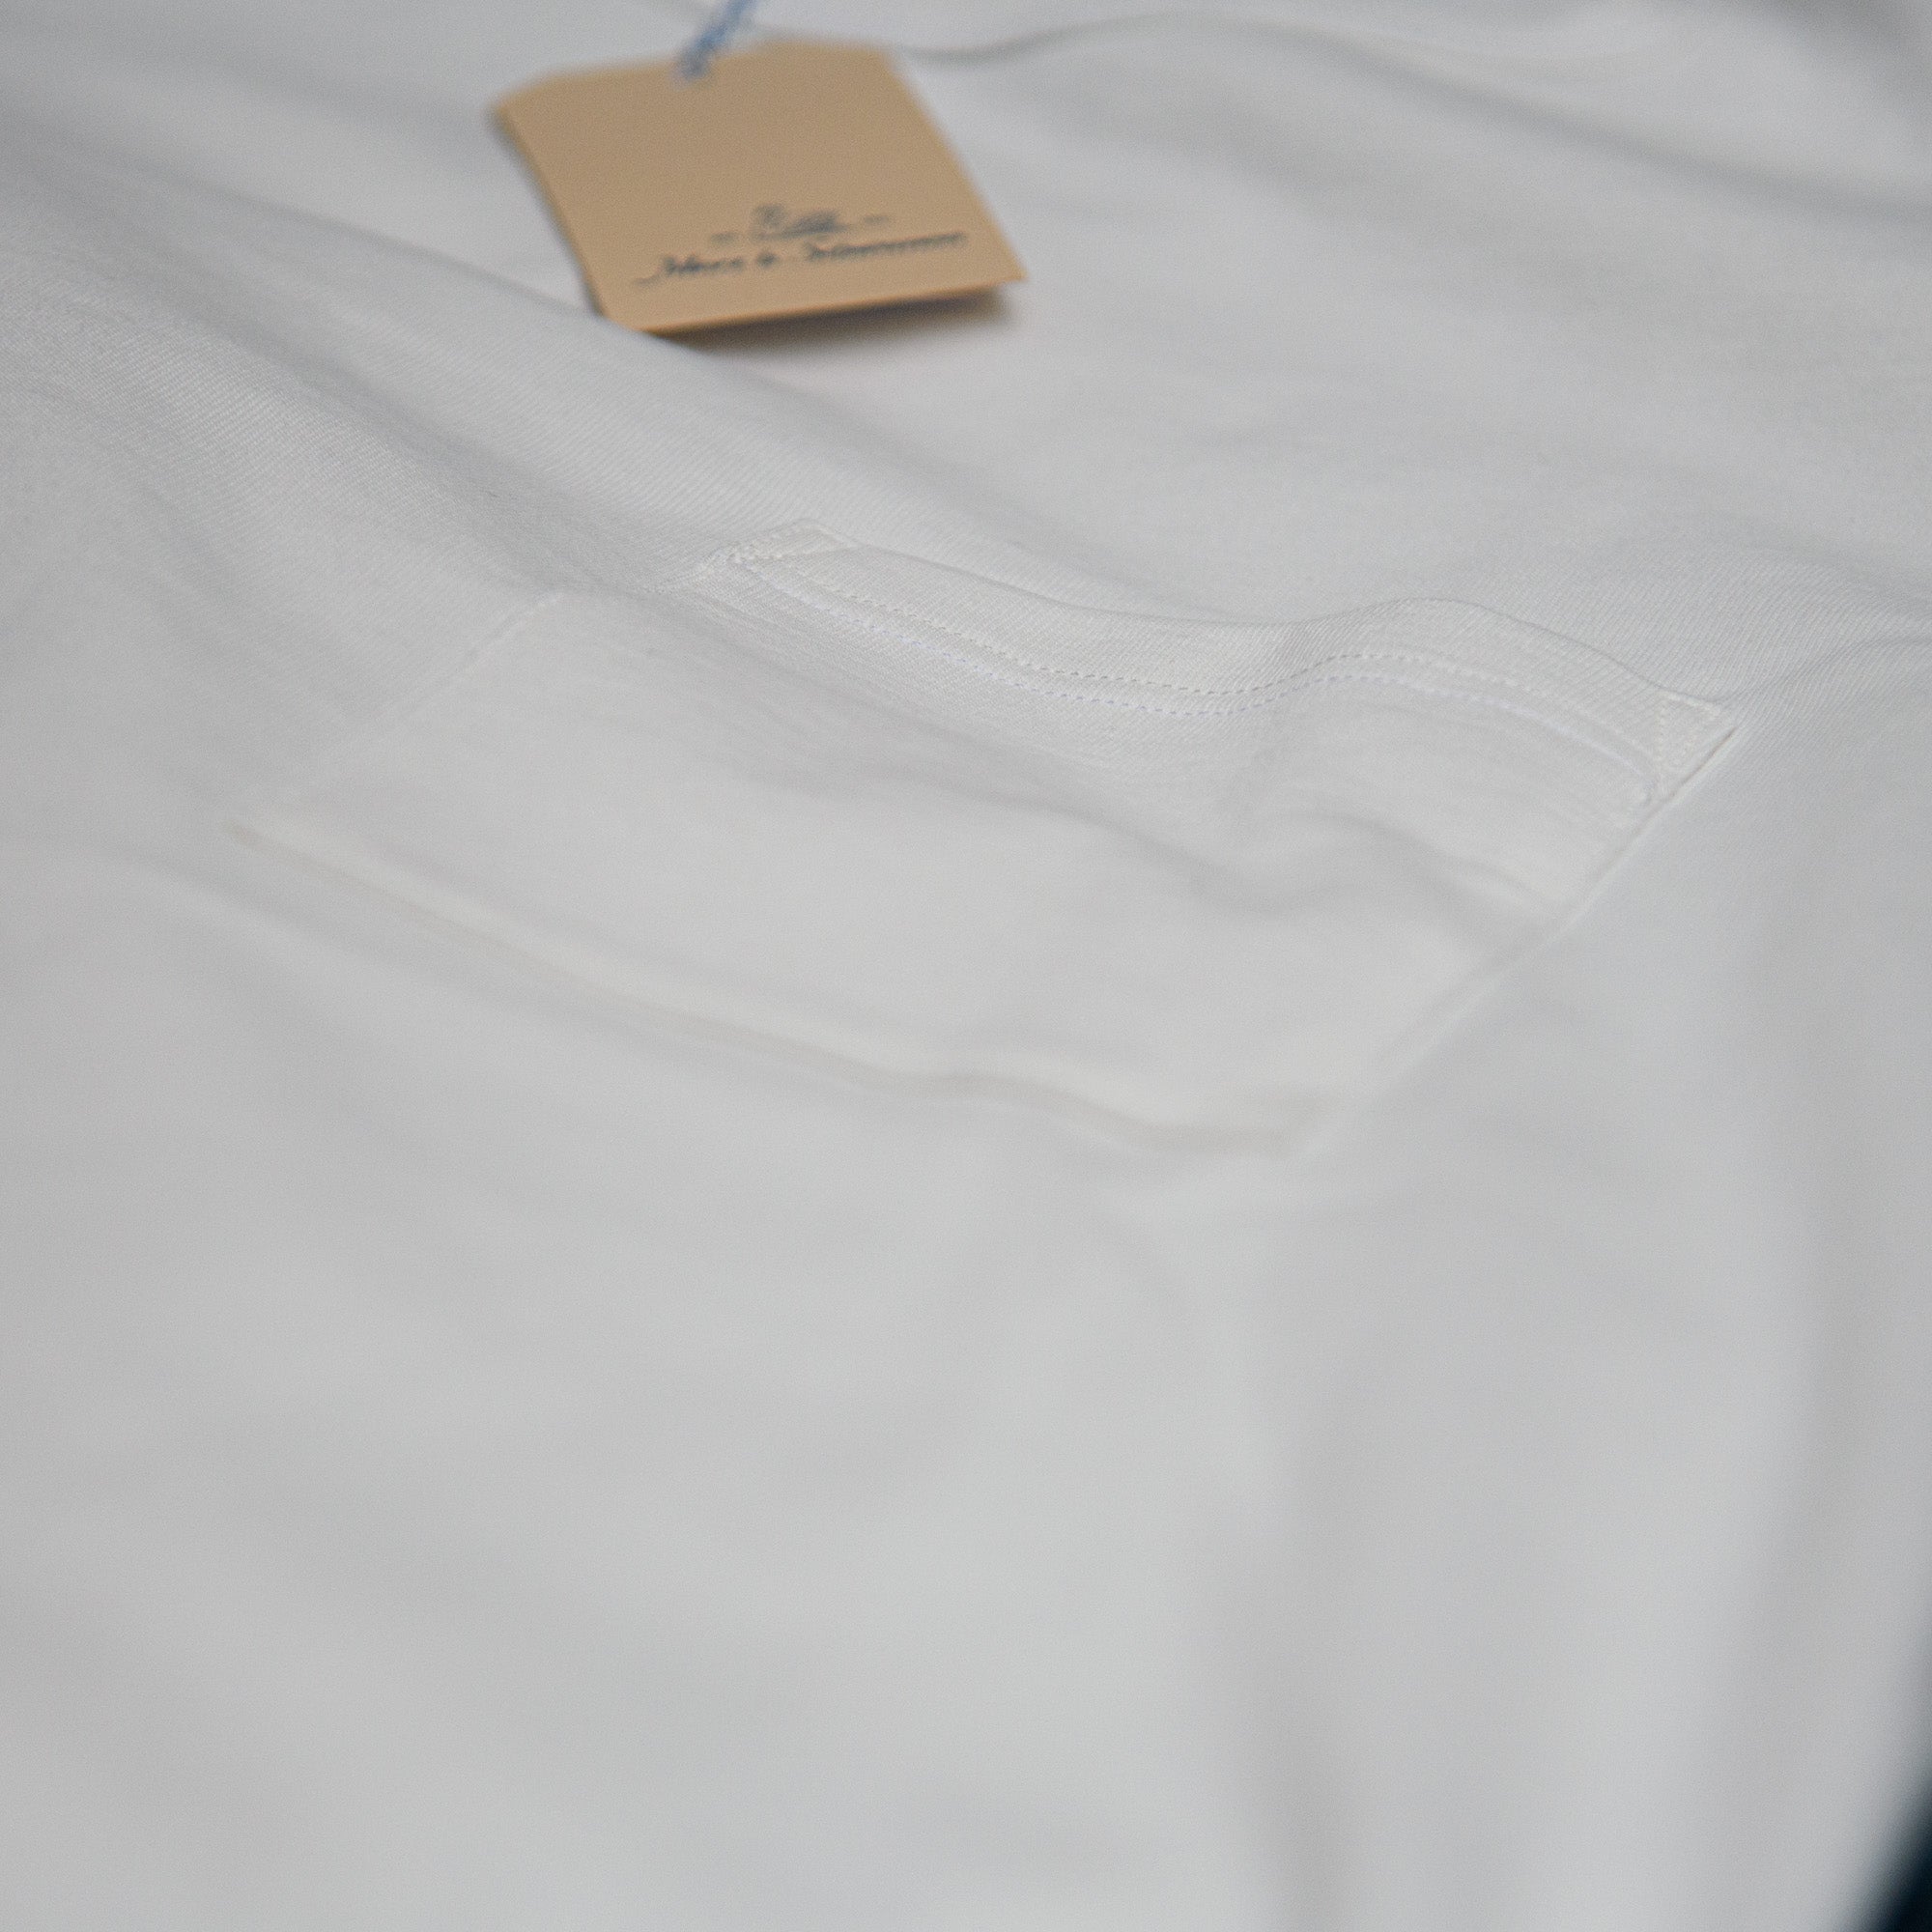 Merz b Schwanen (Europe) – 215 Pocket Limited White Store Exclusive Edition / T-Shirt